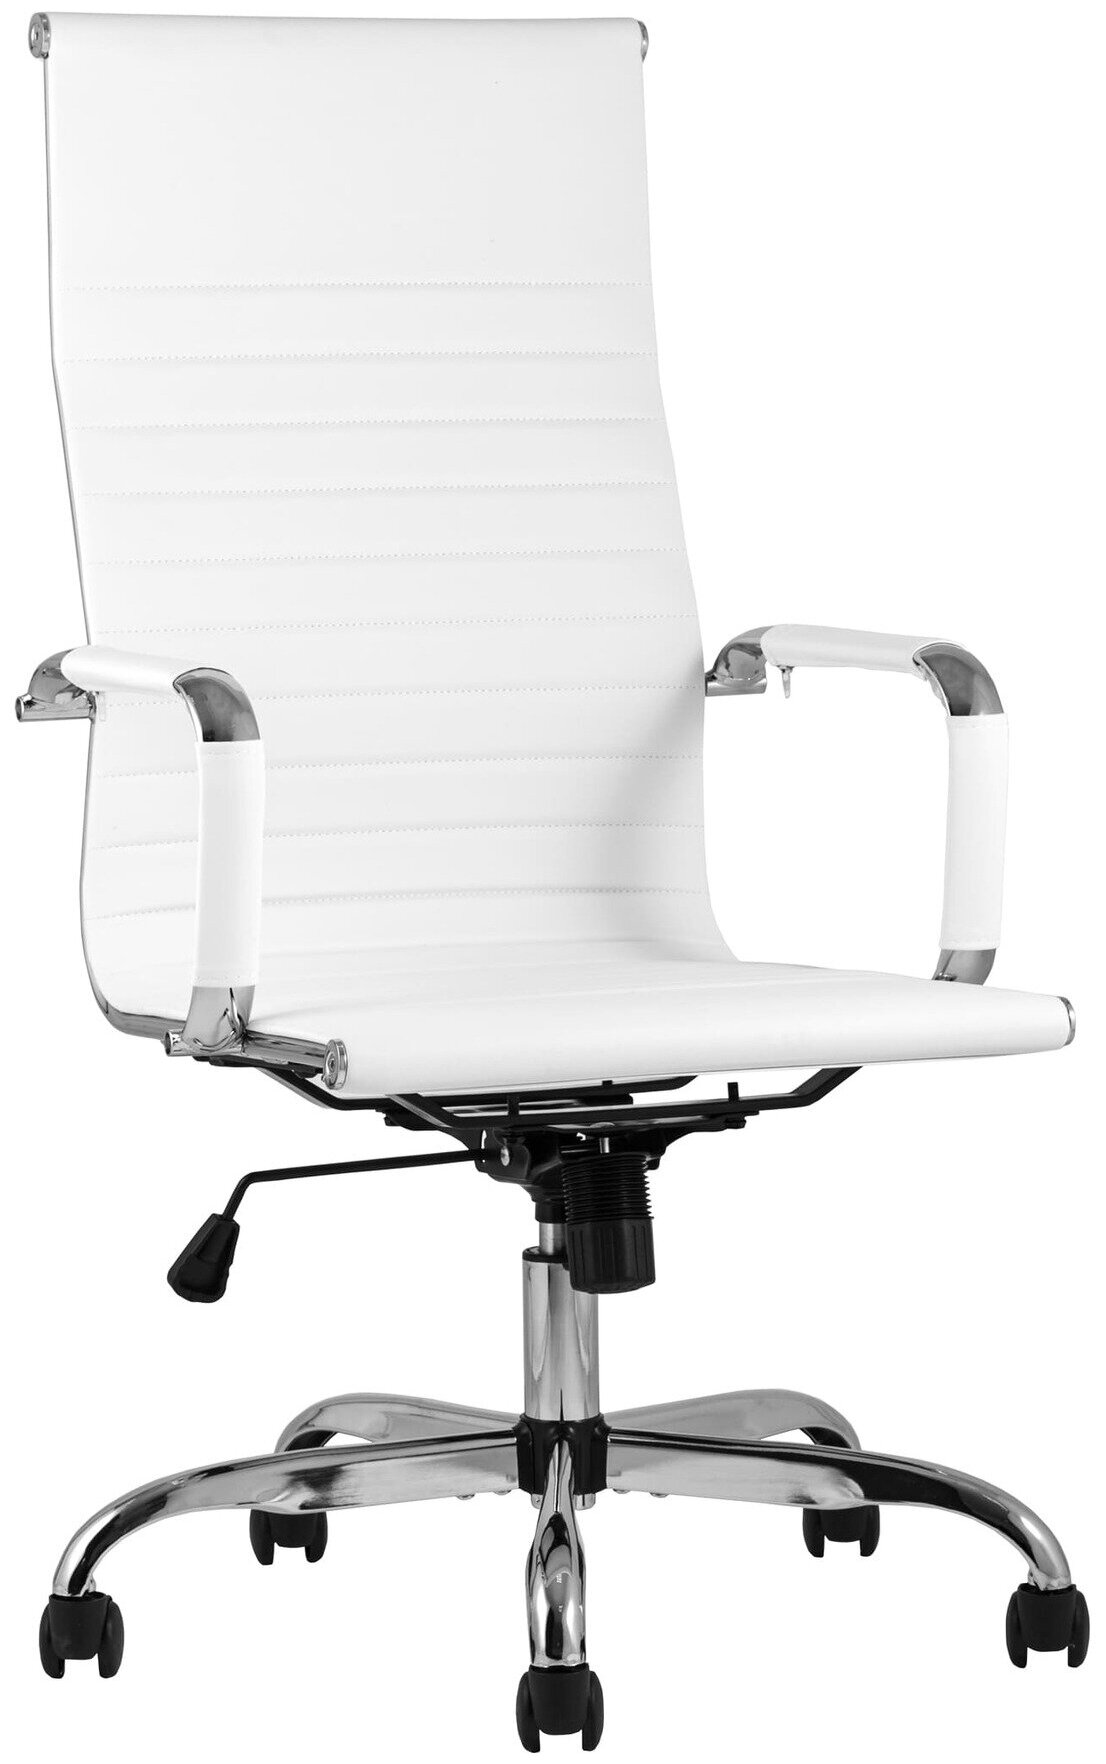 Компьютерное кресло TopChairs City офисное белое обивка экокожа, механизм качания Top Gun